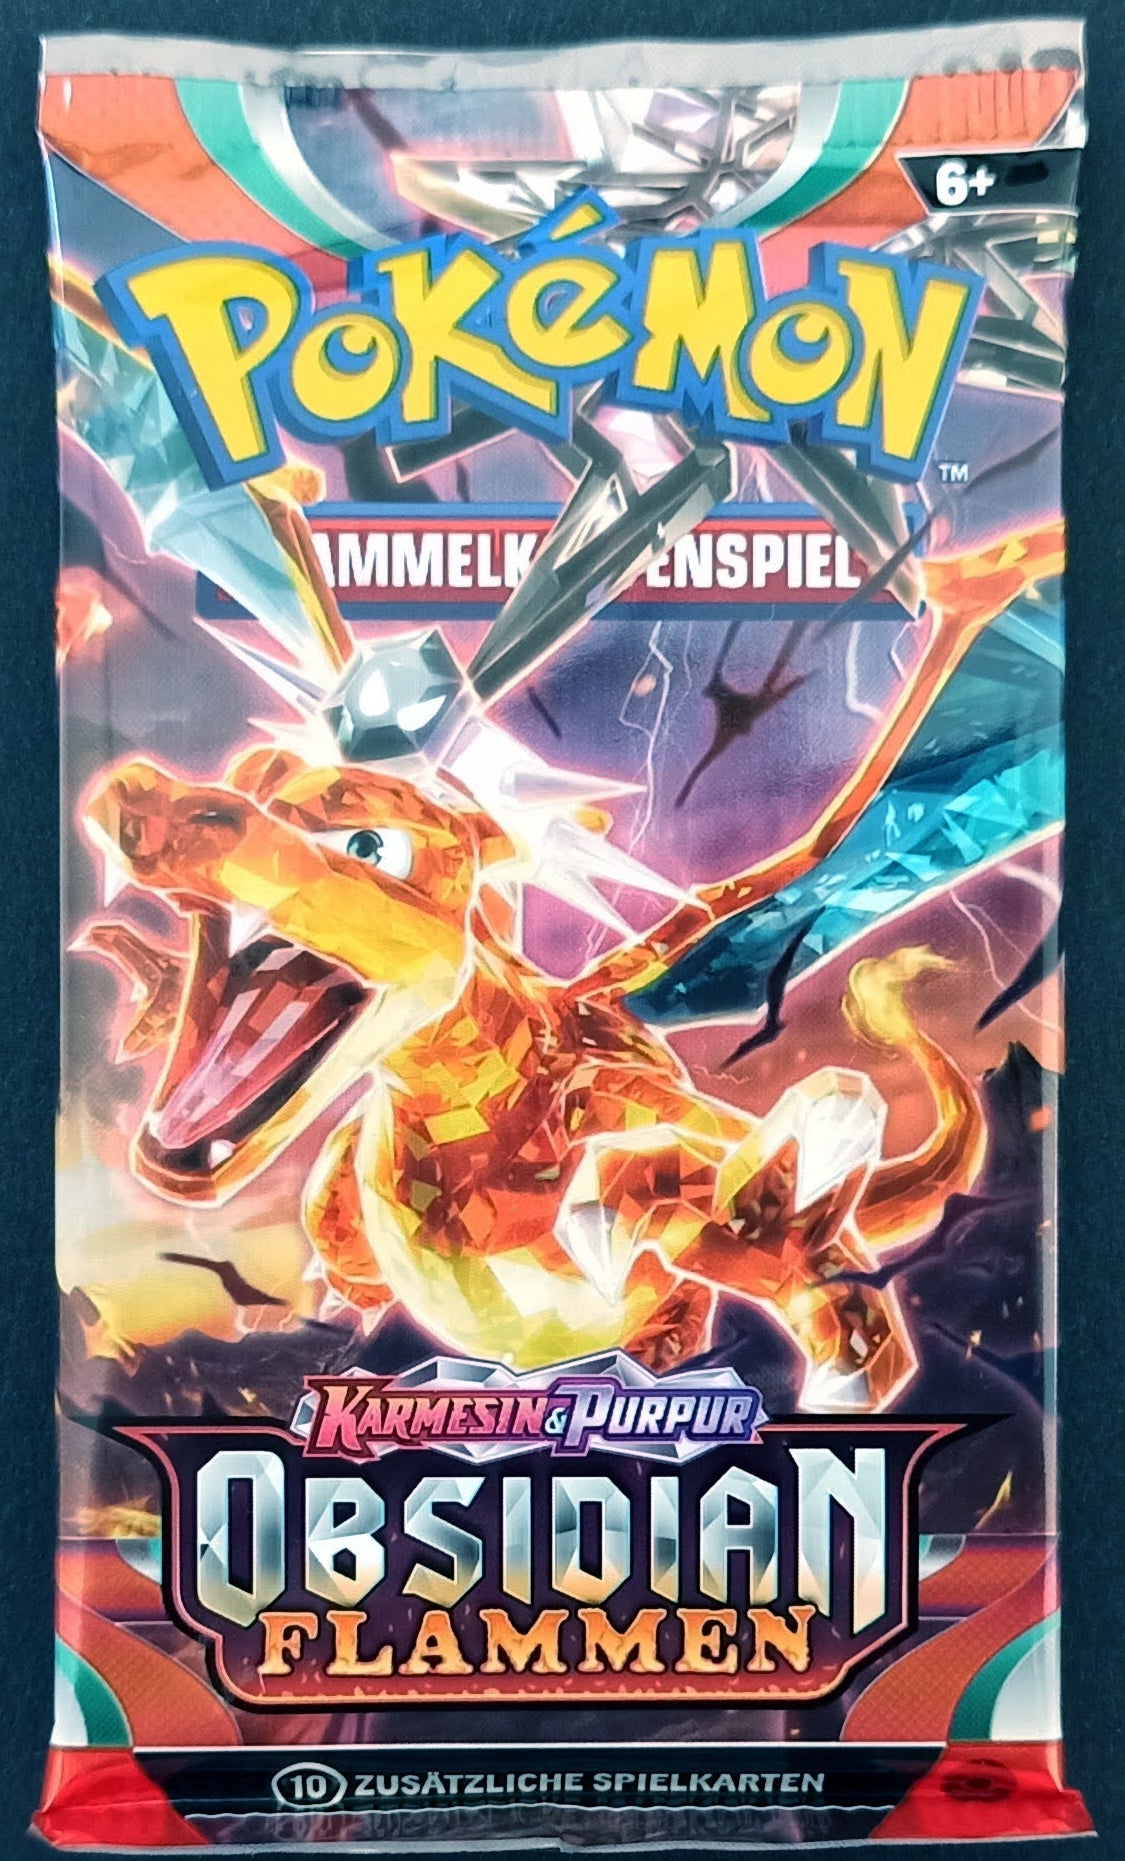 Pokémon Sammelkartenspiel - 1 x Booster Packung - Glurak Artwork - Obsidian Flammen - DEUTSCH